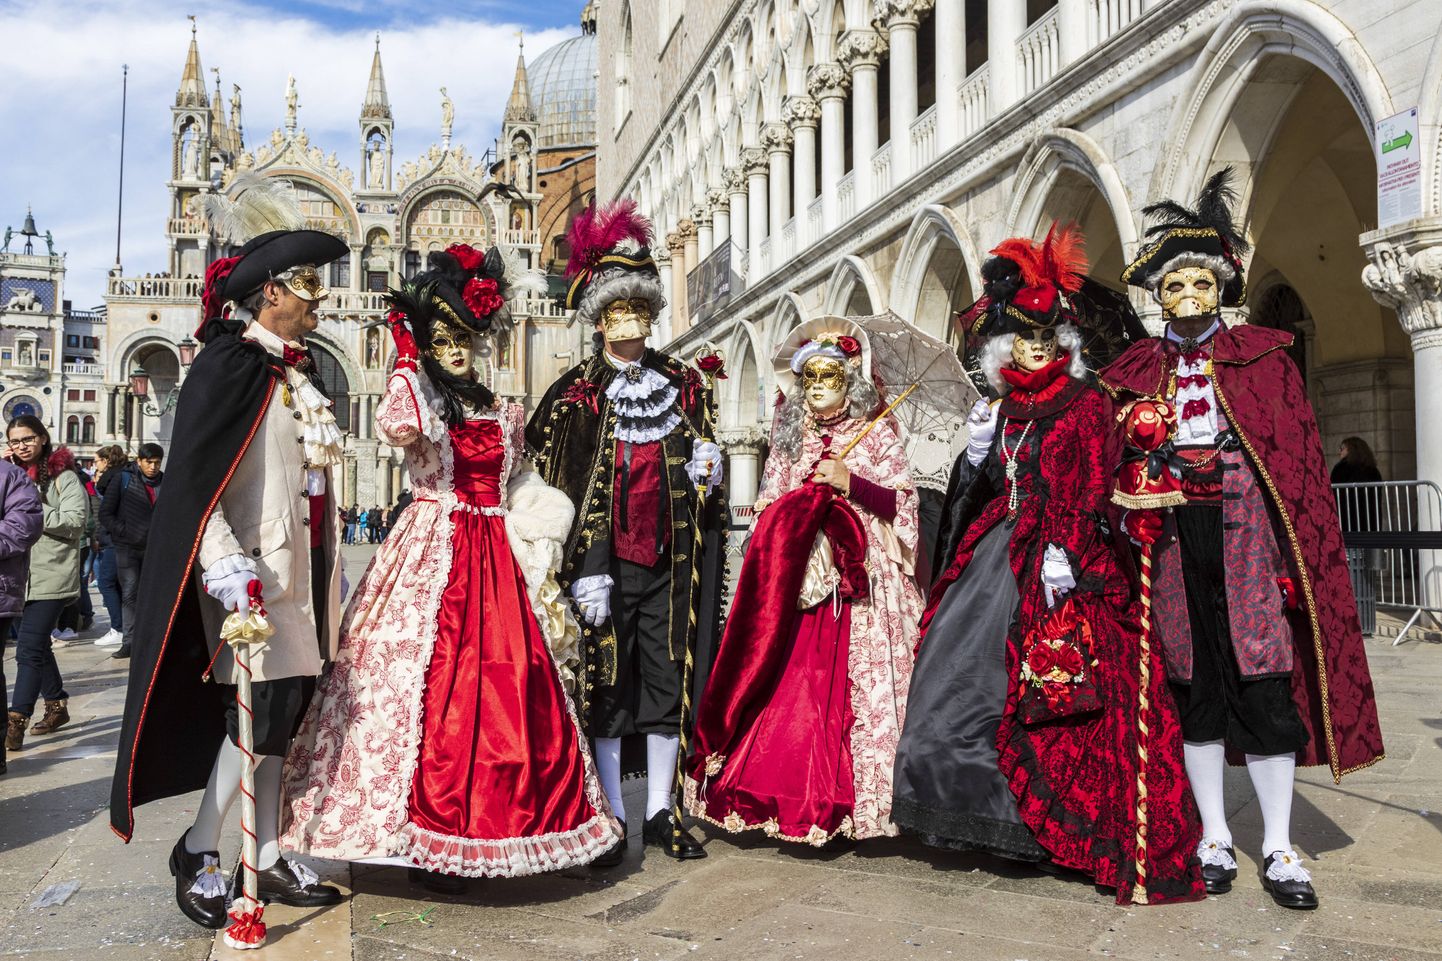 Selle aasta Veneetsia karneval katkestati koroonaviiruse leviku kartuses.